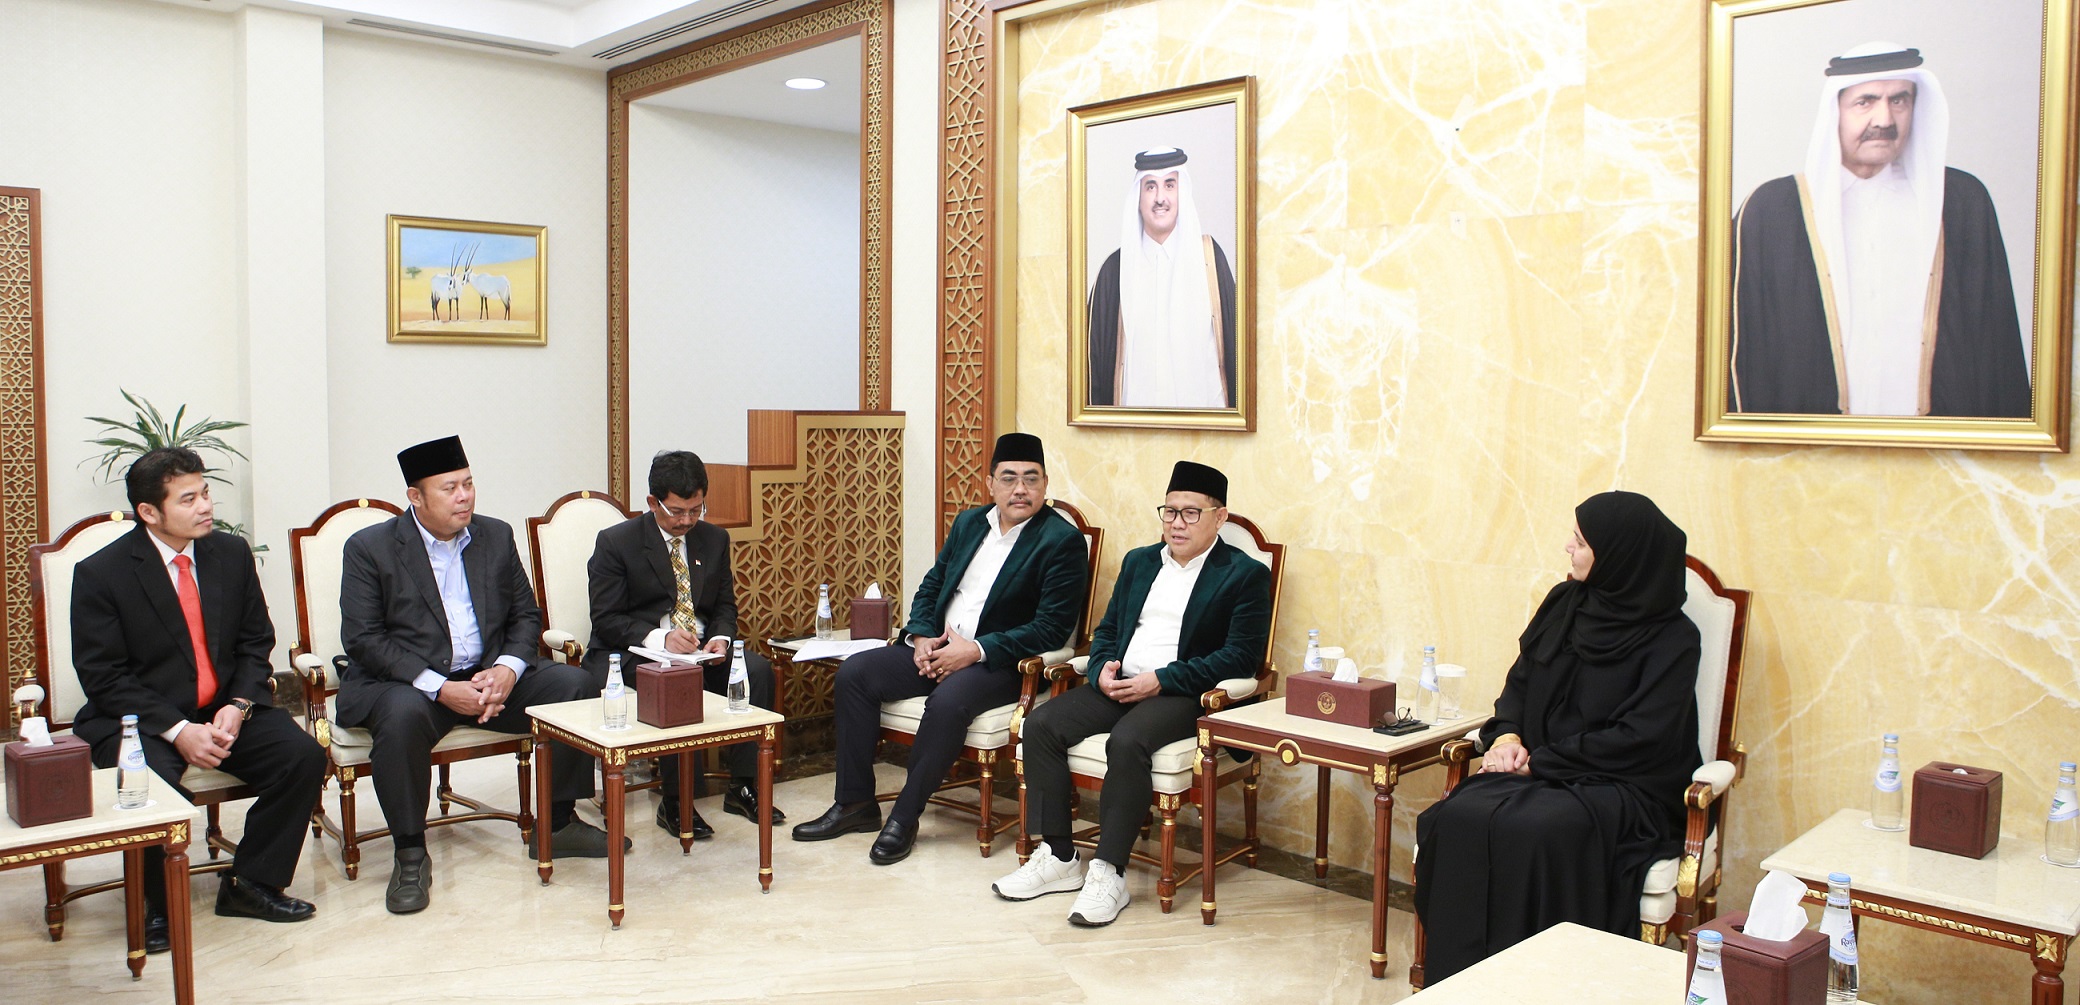 رئيس مجلس الشورى يجتمع مع عدد من رؤساء البرلمانات الذين يزورون البلاد لحضور فعاليات بطولة كأس العالم